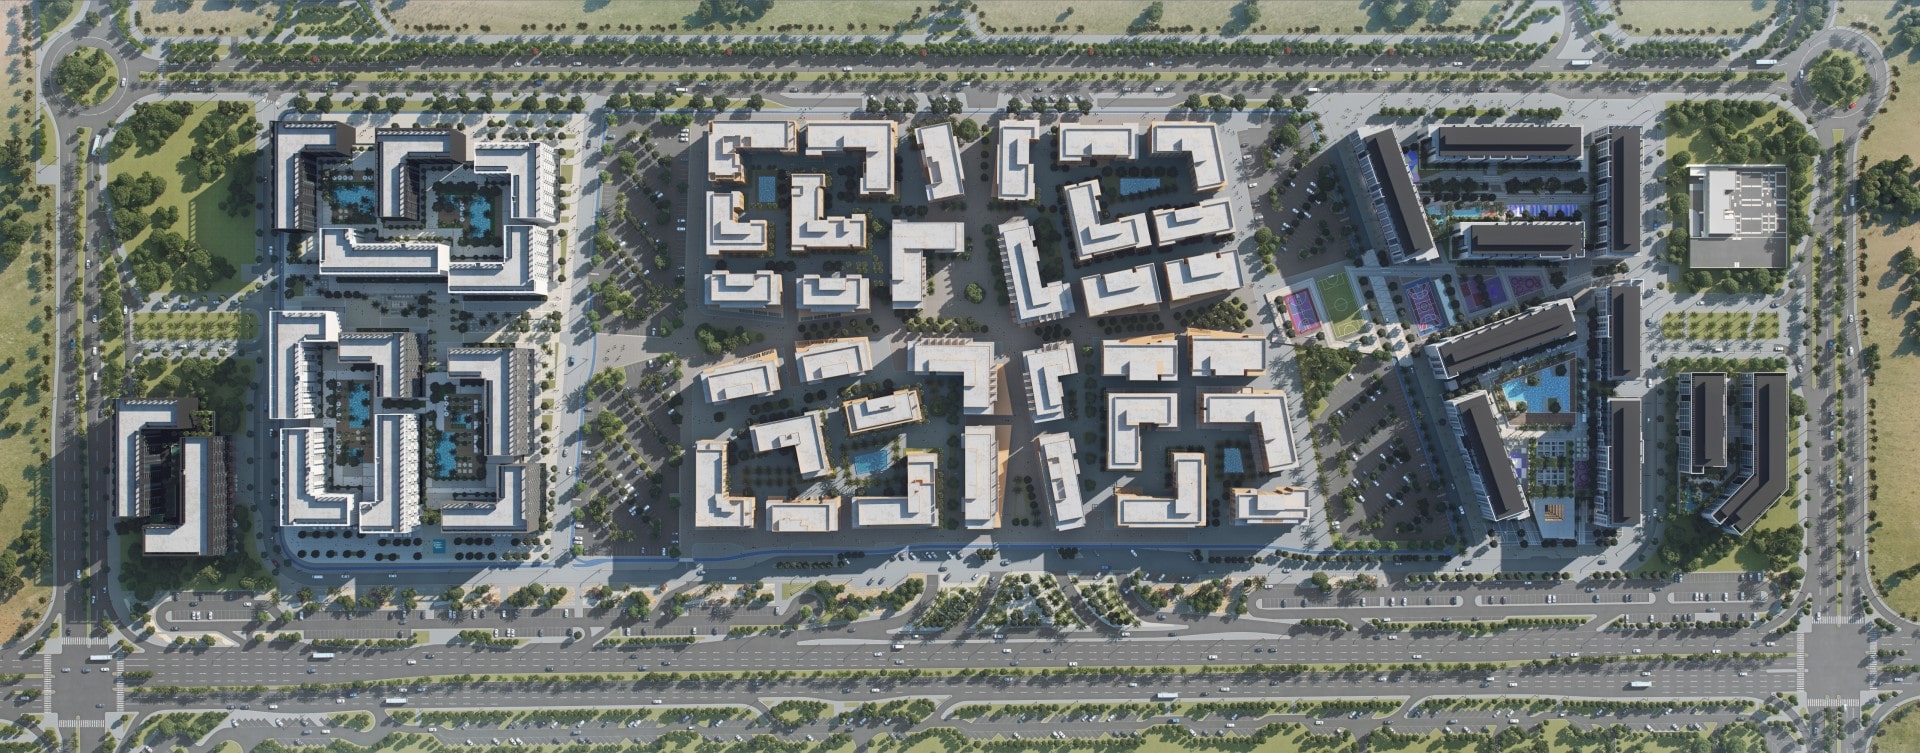 Suroor Apartments for Sale in Al Mamsha Seerah, Sharjah by Alef Group